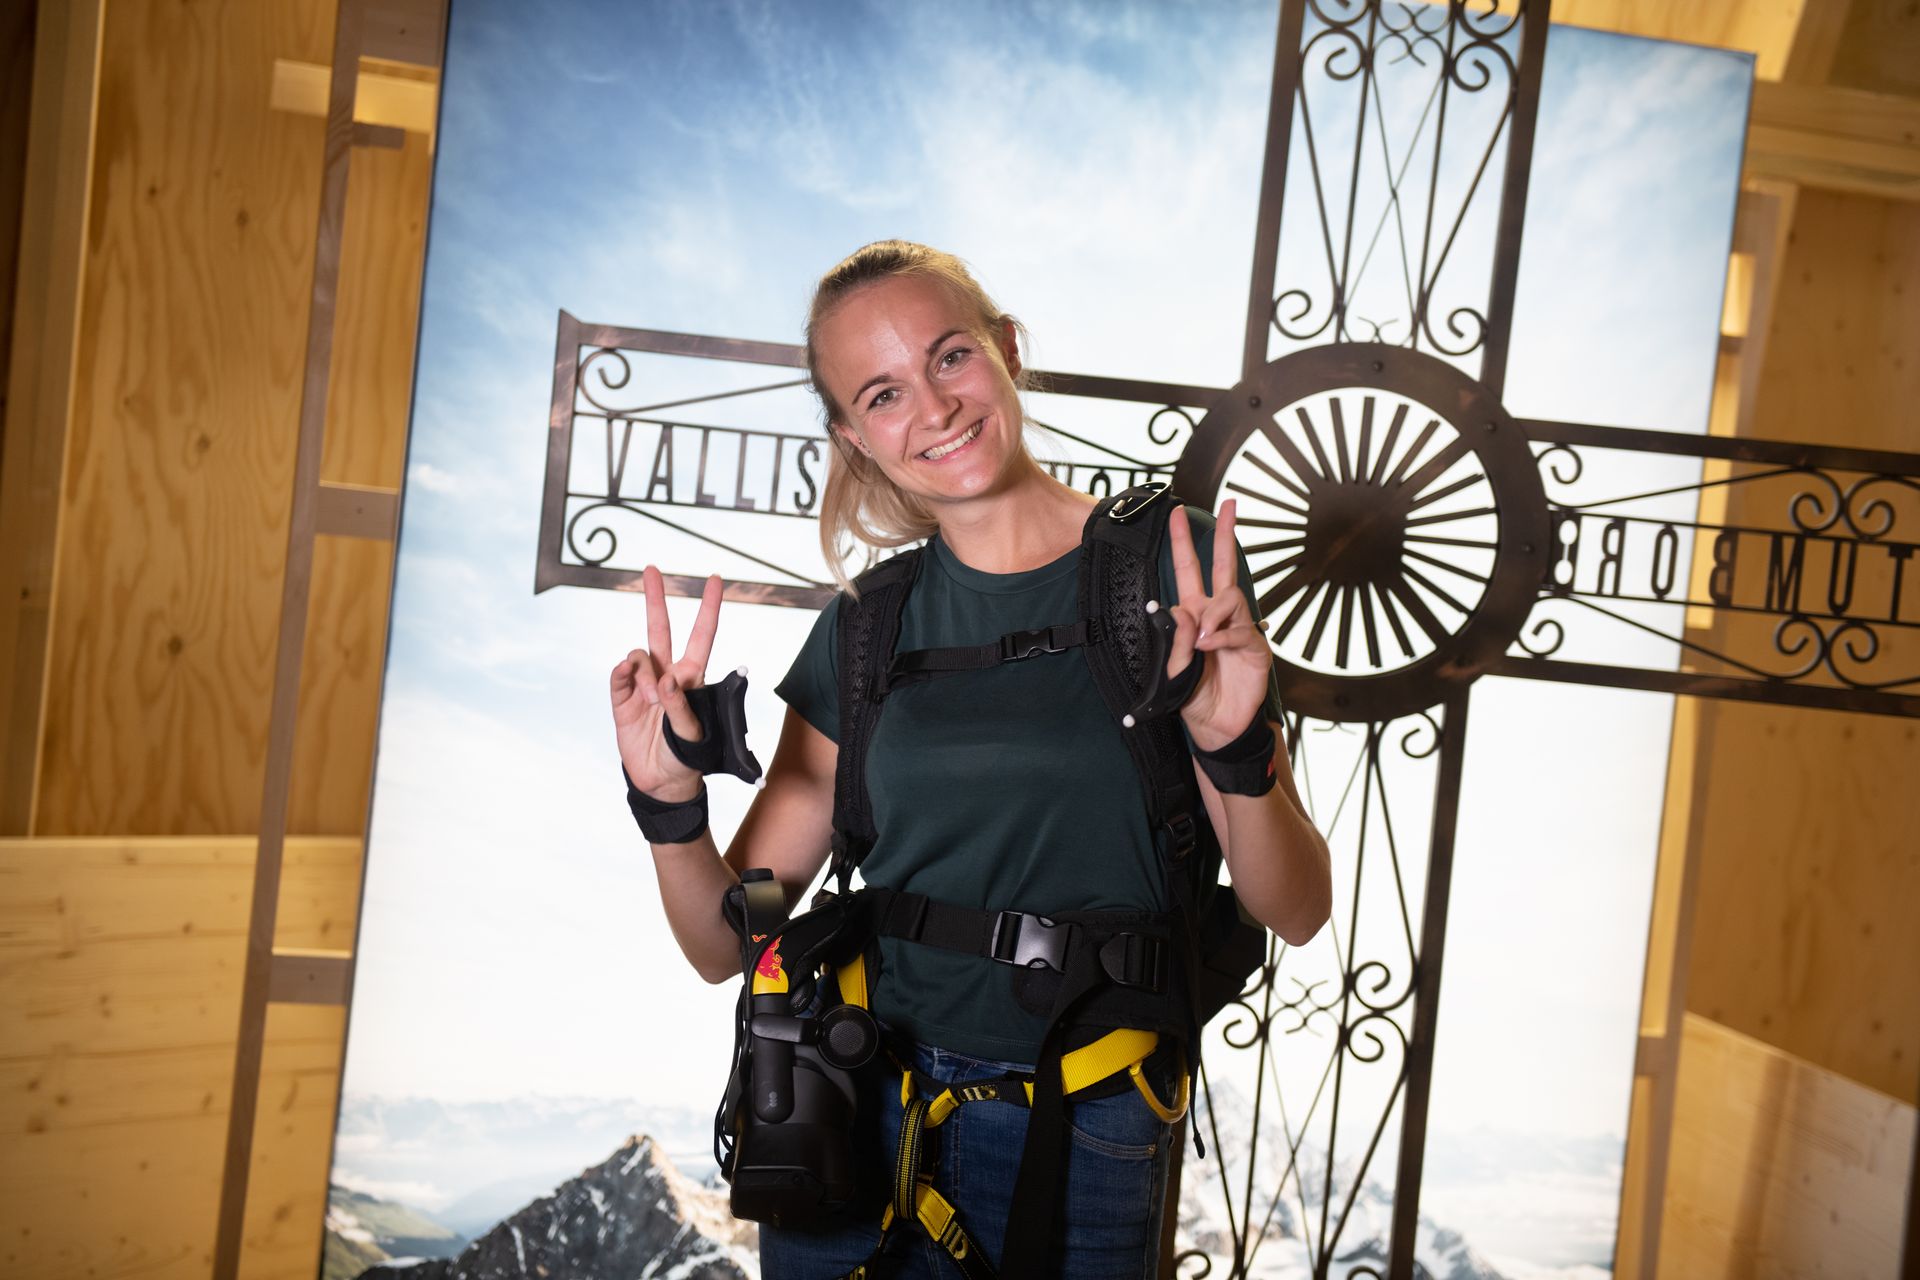 På det schweiziska transportmuseet i Luzern är det möjligt att virtuellt ta itu med klättringen av Matterhorn "beväpnad" med virtual reality-glasögon och en bergsklättersele: detta är ett initiativ från Red Bull Switzerland och olika partners, kallat "The Edge Matterhorn VR”, genom vilken den verkliga bestigningen av alpinisterna Jérémie Heitz och Sam Anthamatten, bergsguider i Zermatt, replikerades, vilket också tillhandahåller 4D-effekterna av vinden, vibrationer, texturer och många objekt eller scenelement